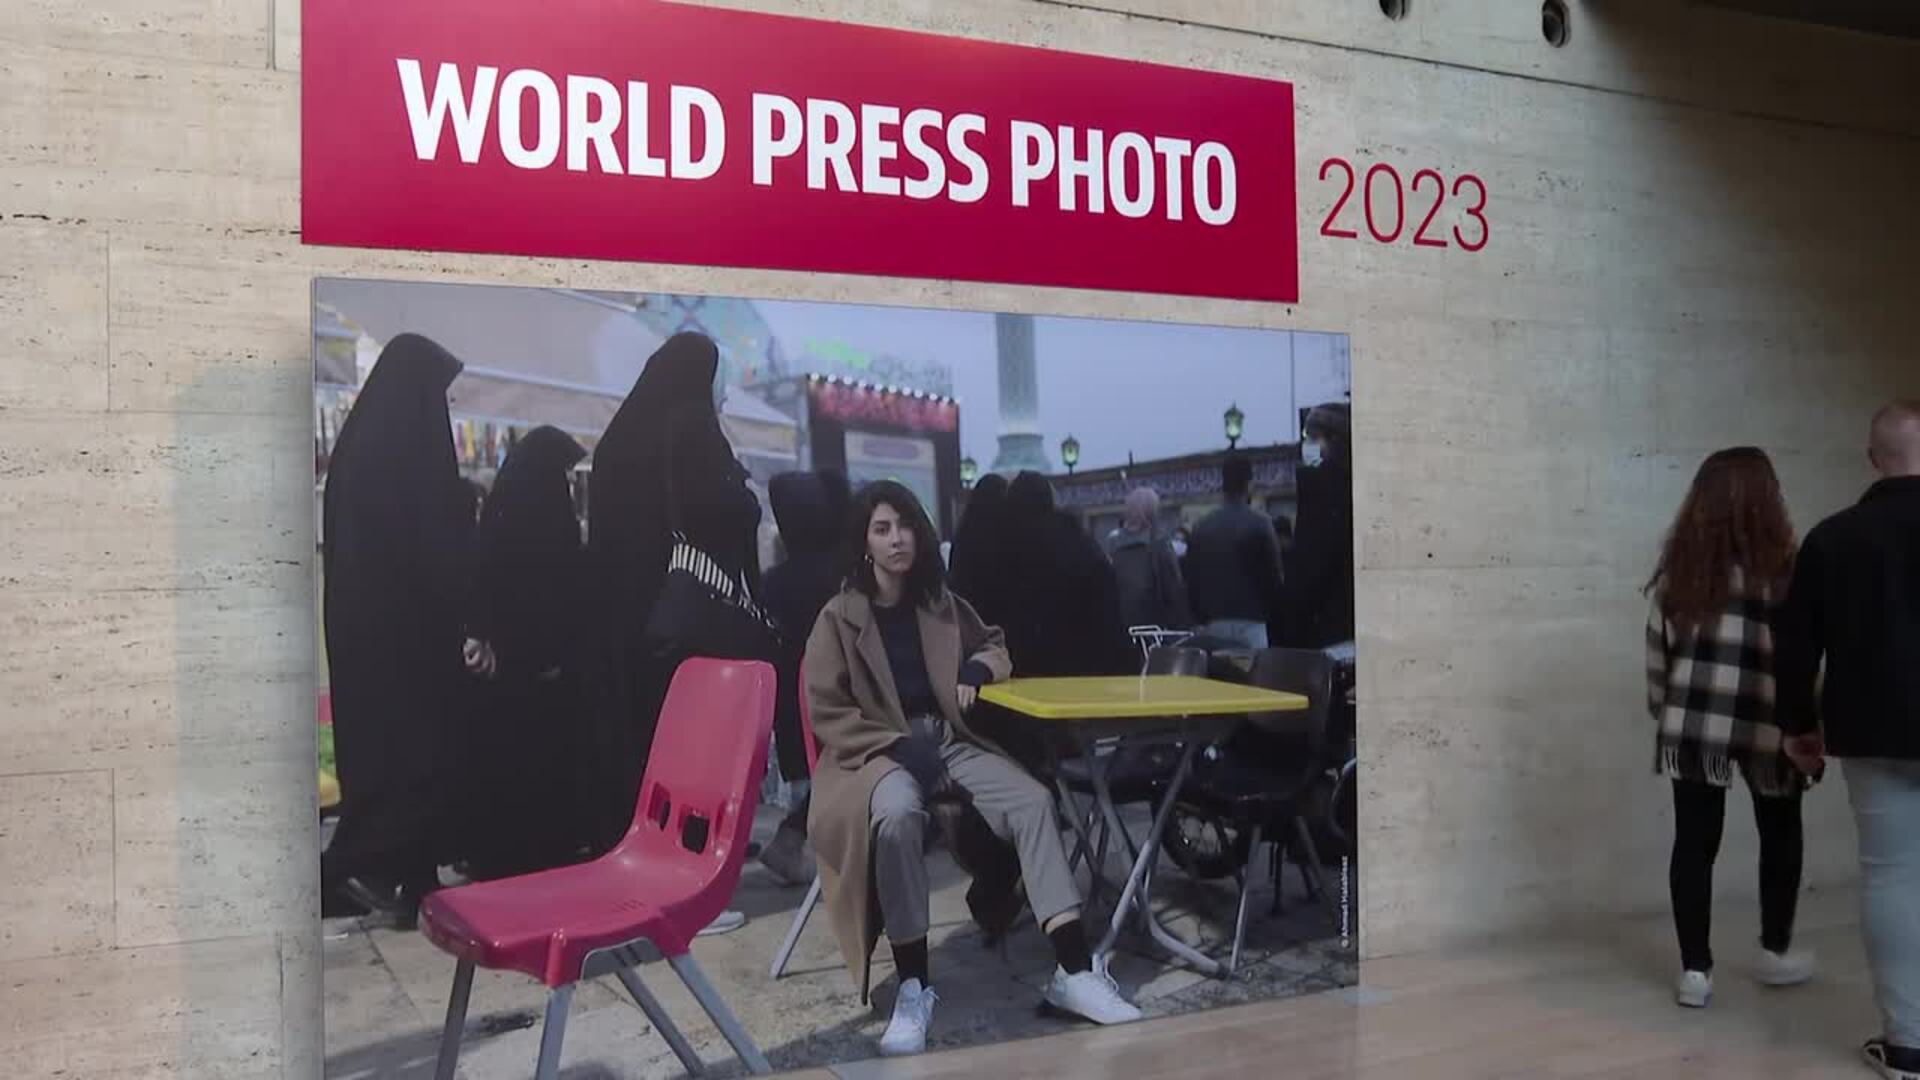 La crisis medioambiental y las guerras protagonizan la exposición World Press Photo 2023